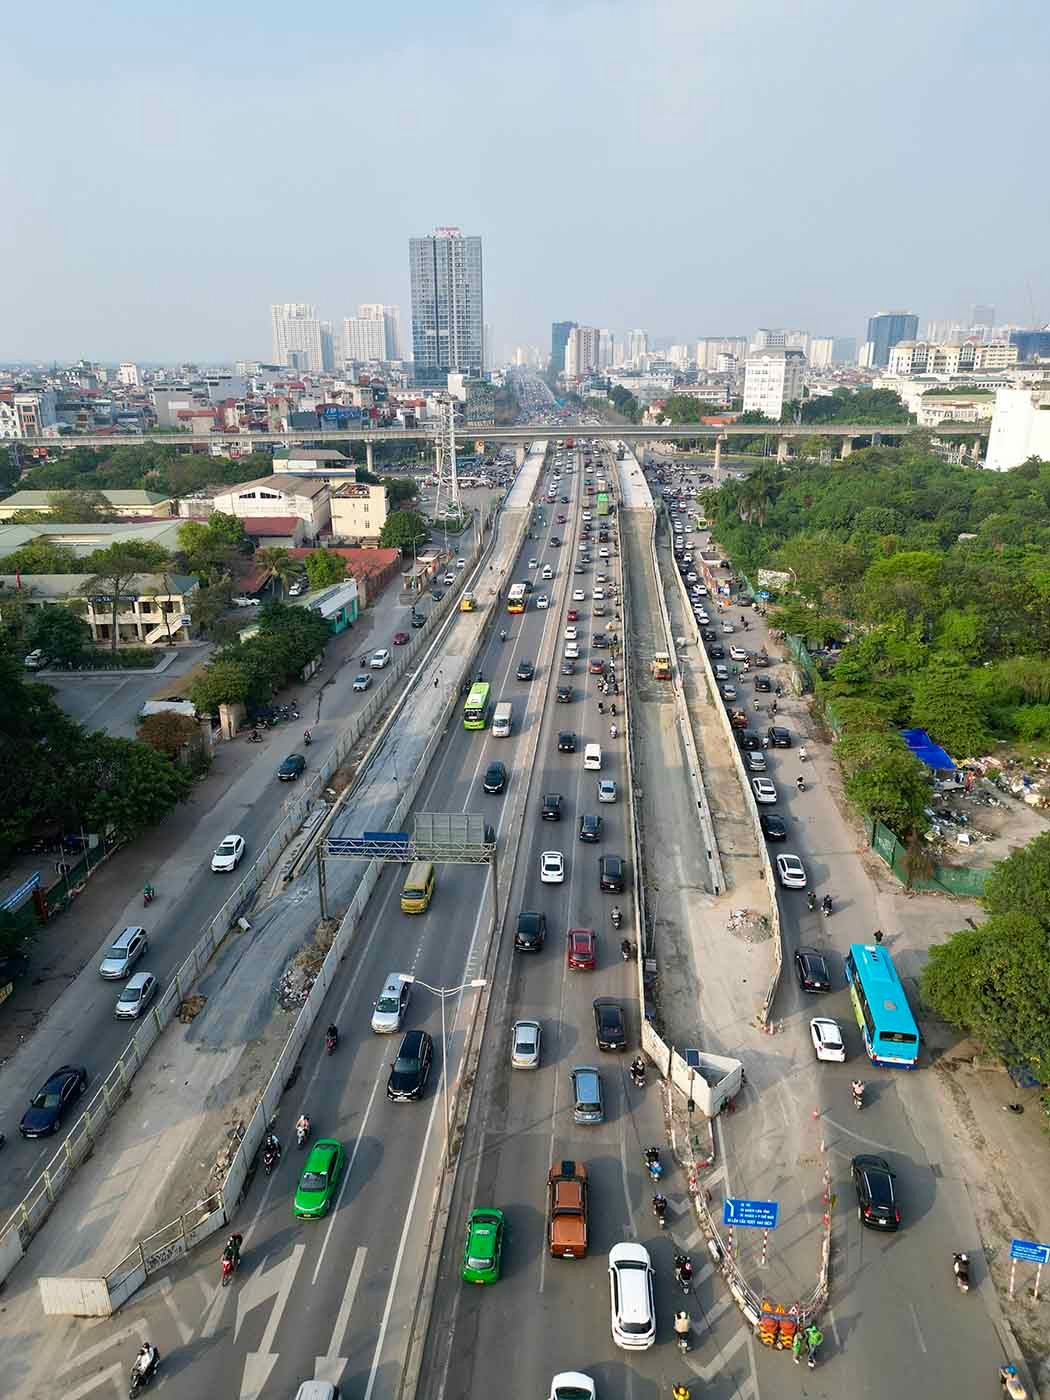 Dự án hoàn thiện kỳ vọng sẽ tăng năng lực giao thông qua nút giao Mai Dịch, góp phần giải quyết tình trạng tắc nghẽn giao thông khu vực phía Tây Hà Nội, bảo đảm thúc đẩy thông thương, vận tải hành khách, hàng hoá giữa trung tâm Hà Nội với khu vực phía Bắc và vùng lân cận.